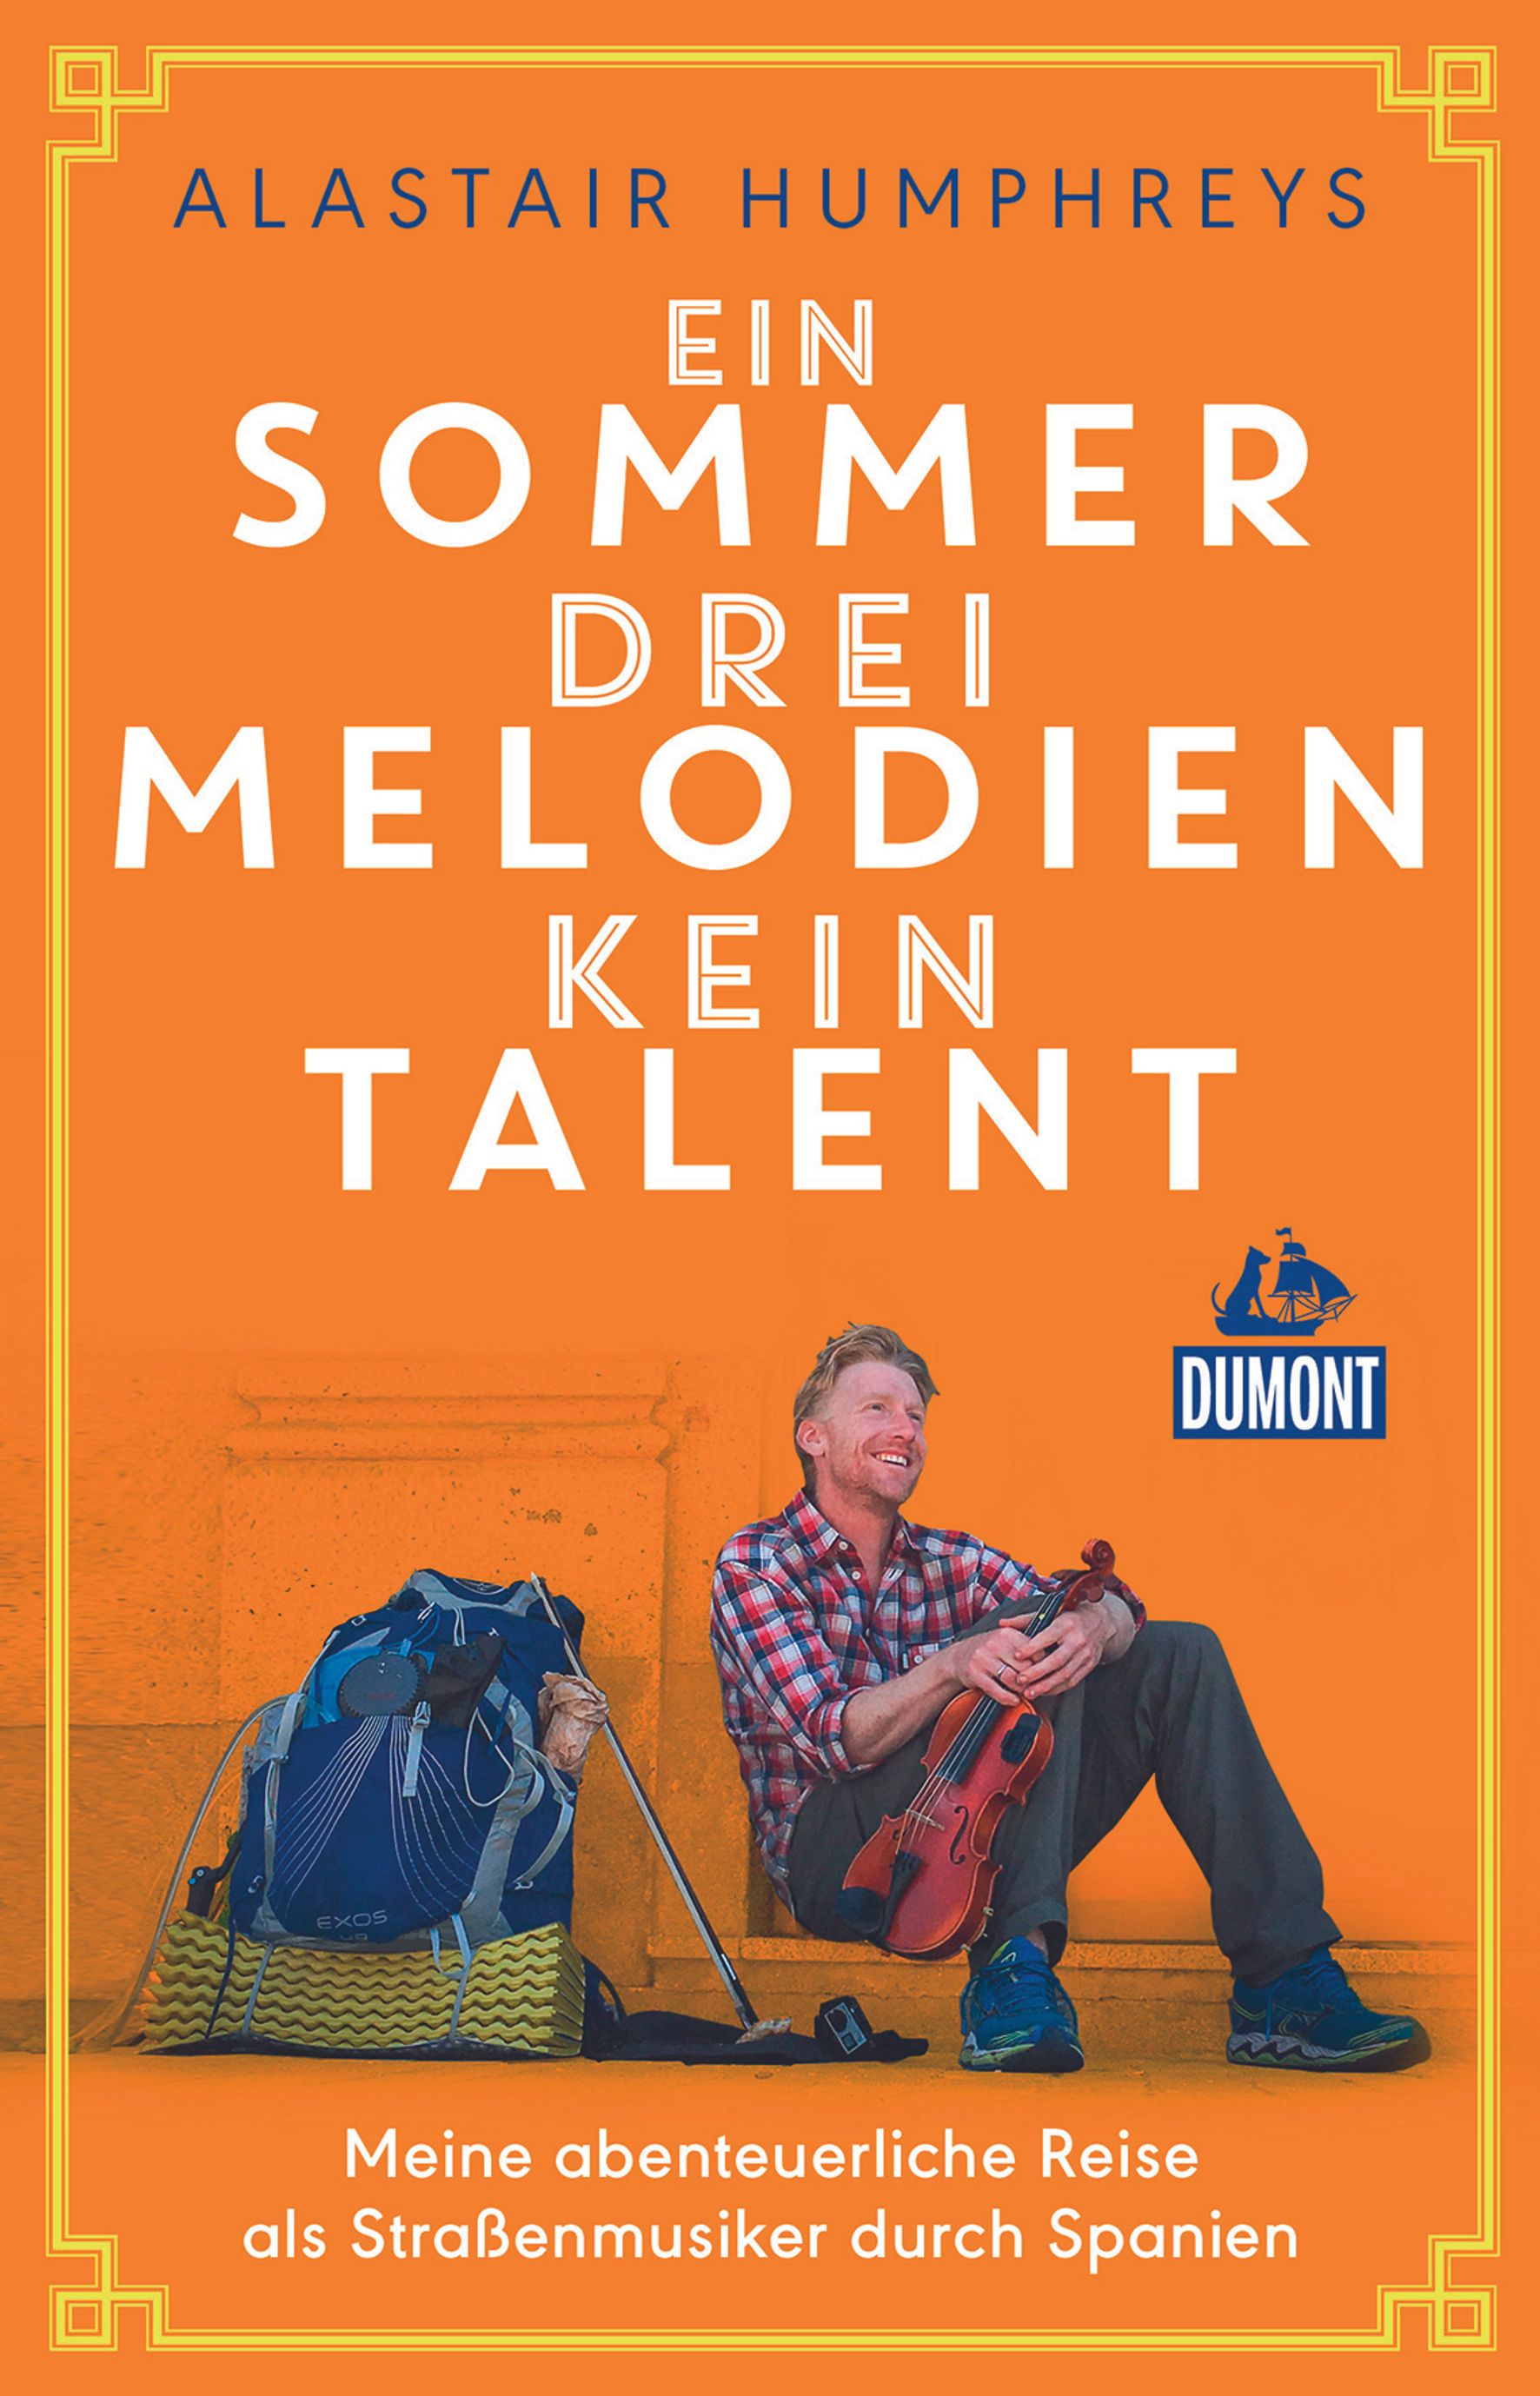 MAIRDUMONT DuMont Welt-Menschen-Reisen Ein Sommer, drei Melodien, kein Talent (eBook)